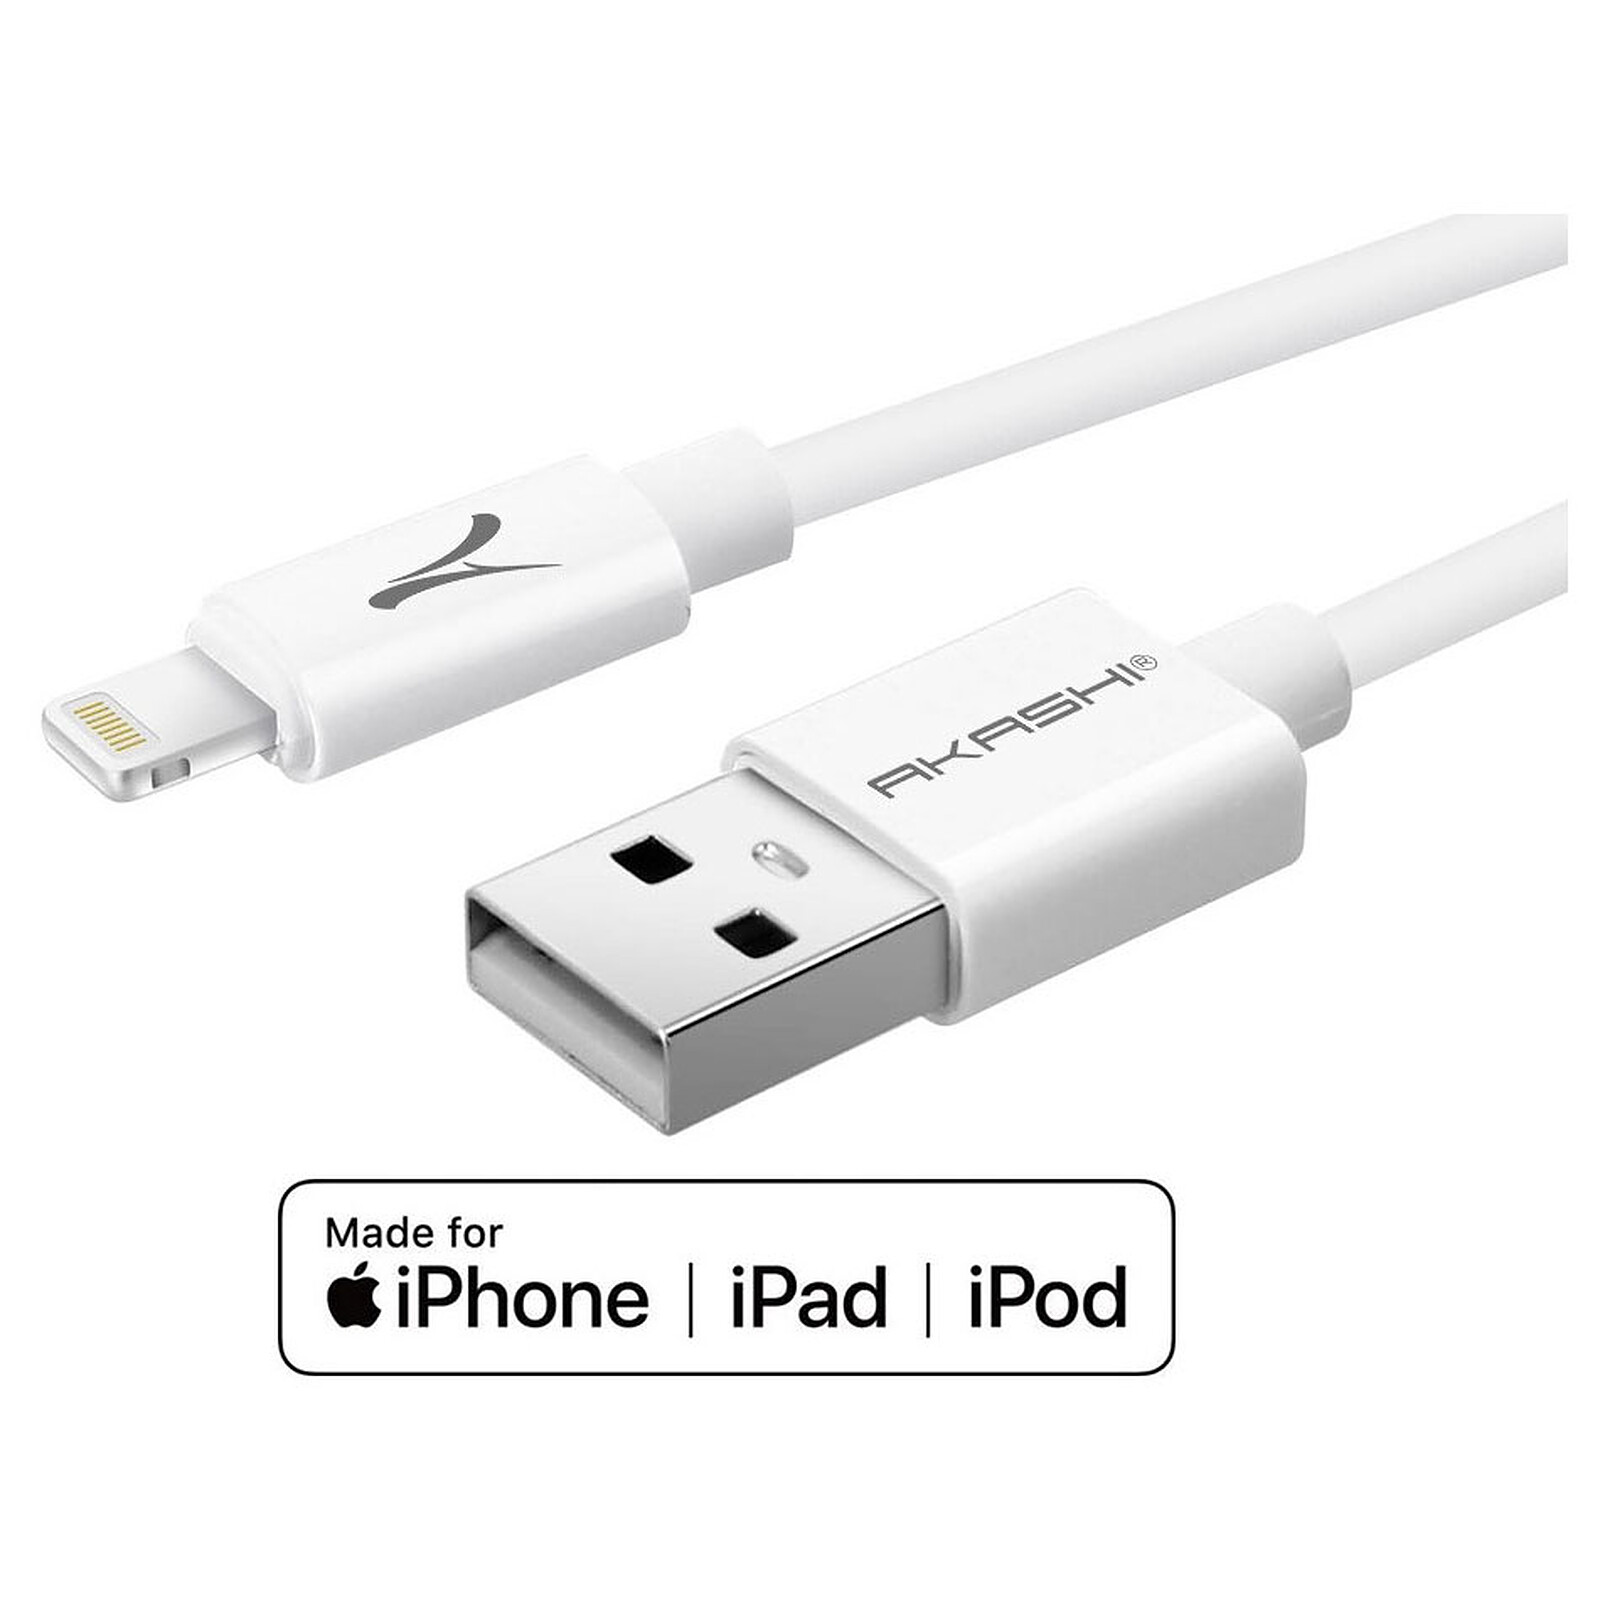 Adaptateur USB pour iPhone [Certifié Apple MFi], Adaptateur pour